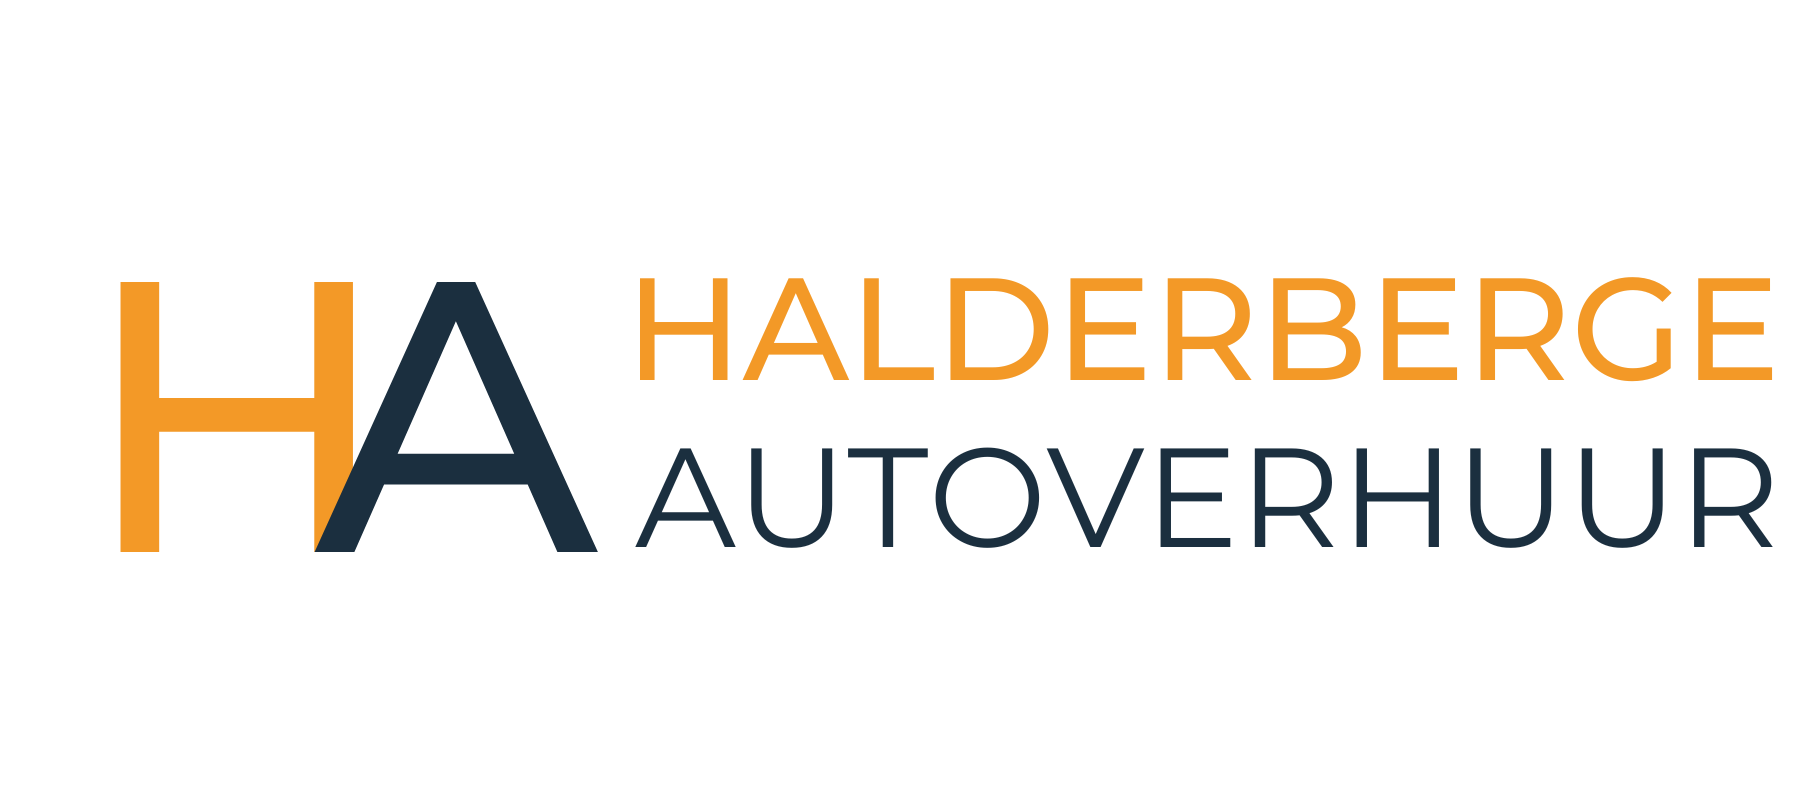 Autoverhuur Halderberge